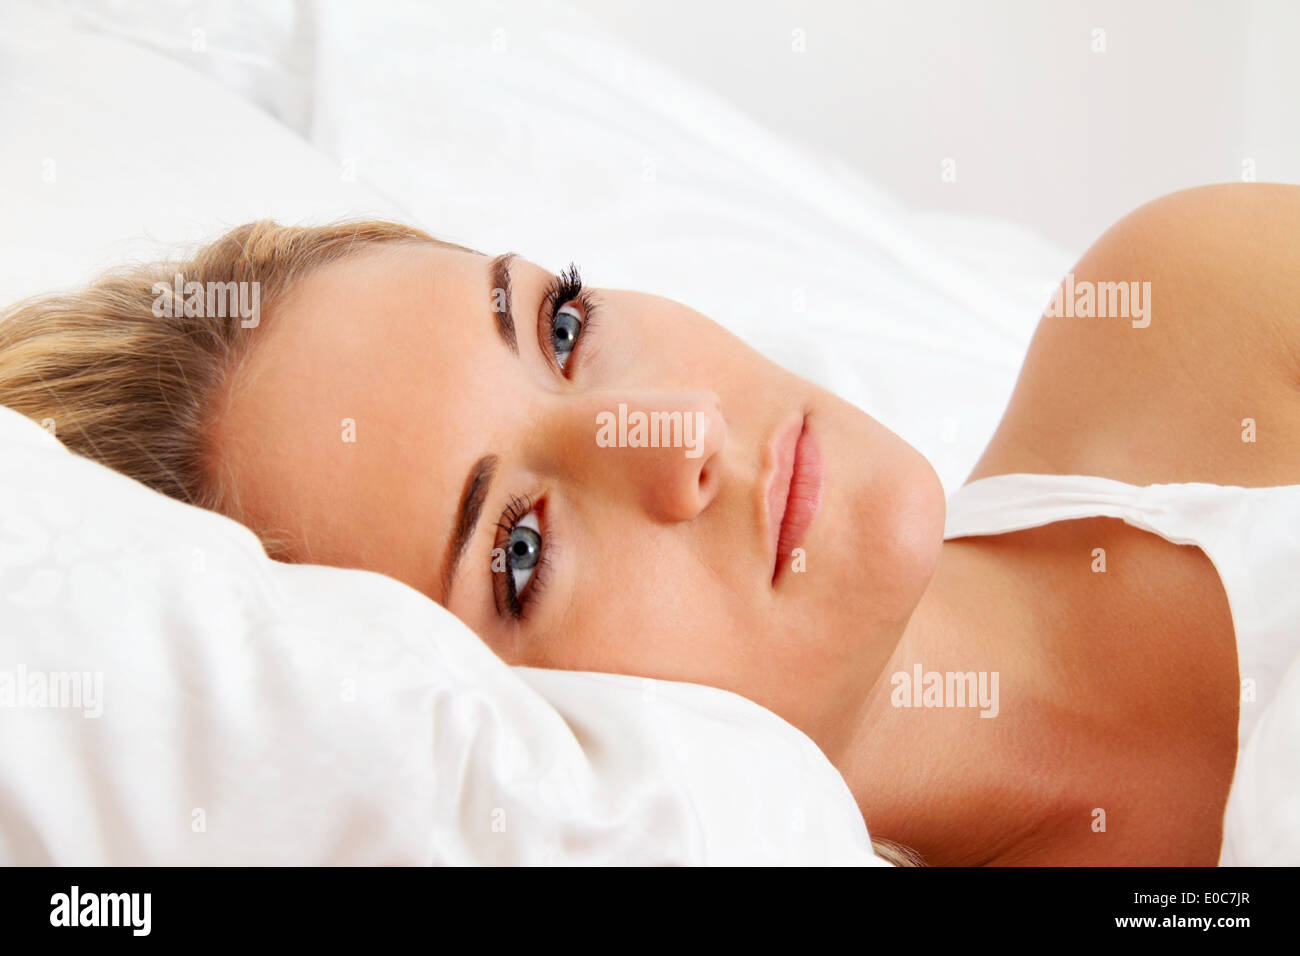 A young woman lies awake in the bed. Sleepless and thoughtfully., Eine junge Frau liegt wach im Bett. Schlaflos und nachdenklich Stock Photo